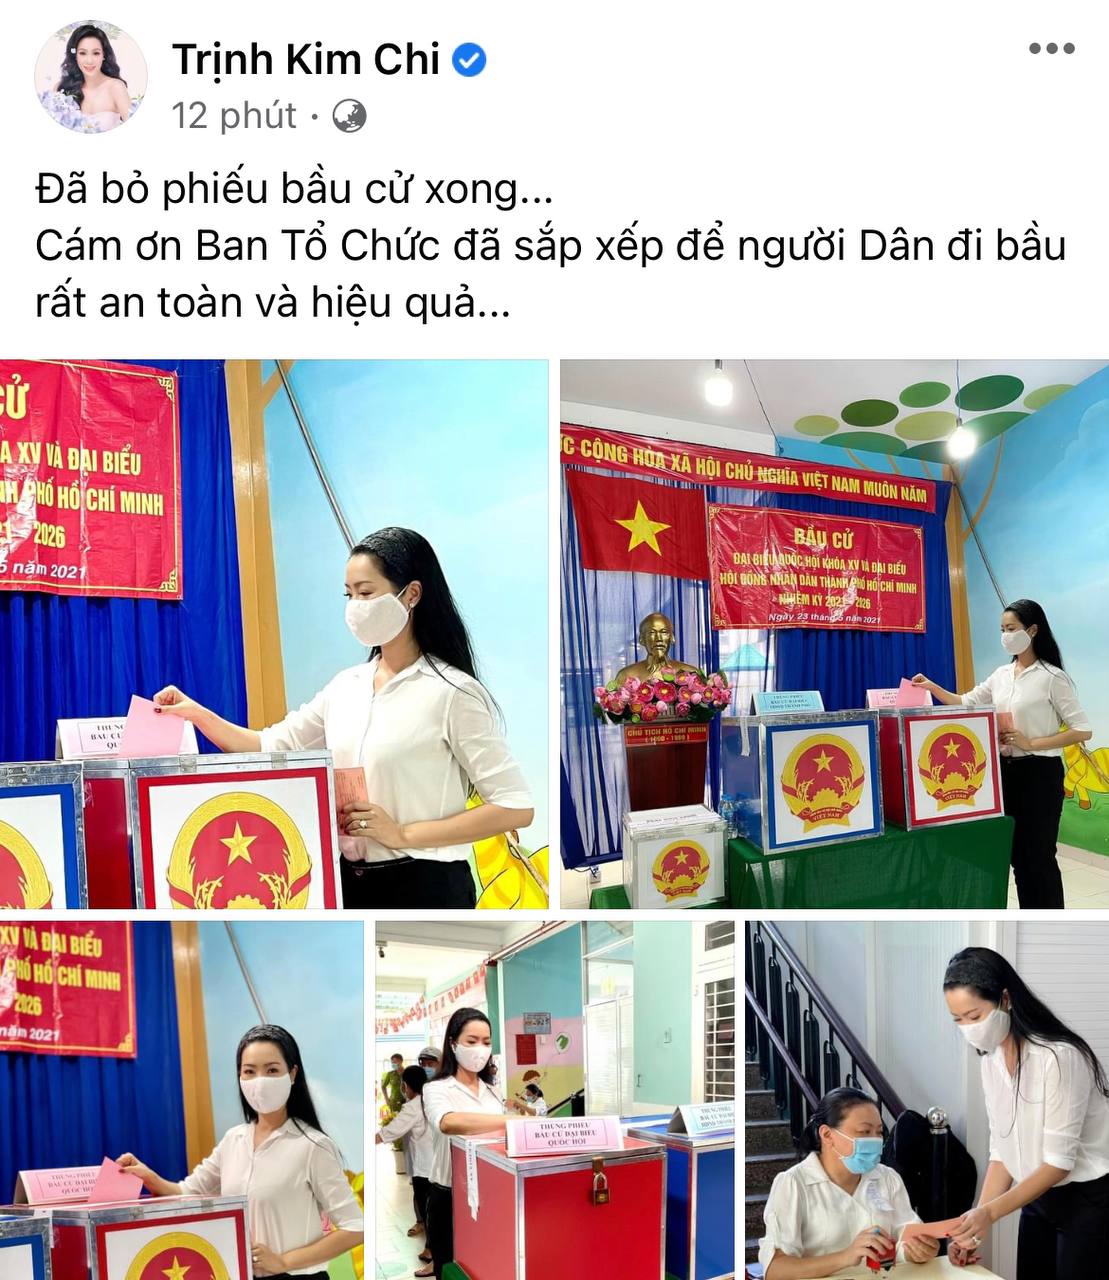 Sao Việt nô nức đi bầu cử: Tiểu Vy, Huyền My dậy sớm làm thanh niên gương mẫu, Khánh Vân từ Mỹ cũng hào hứng hưởng ứng - Ảnh 14.